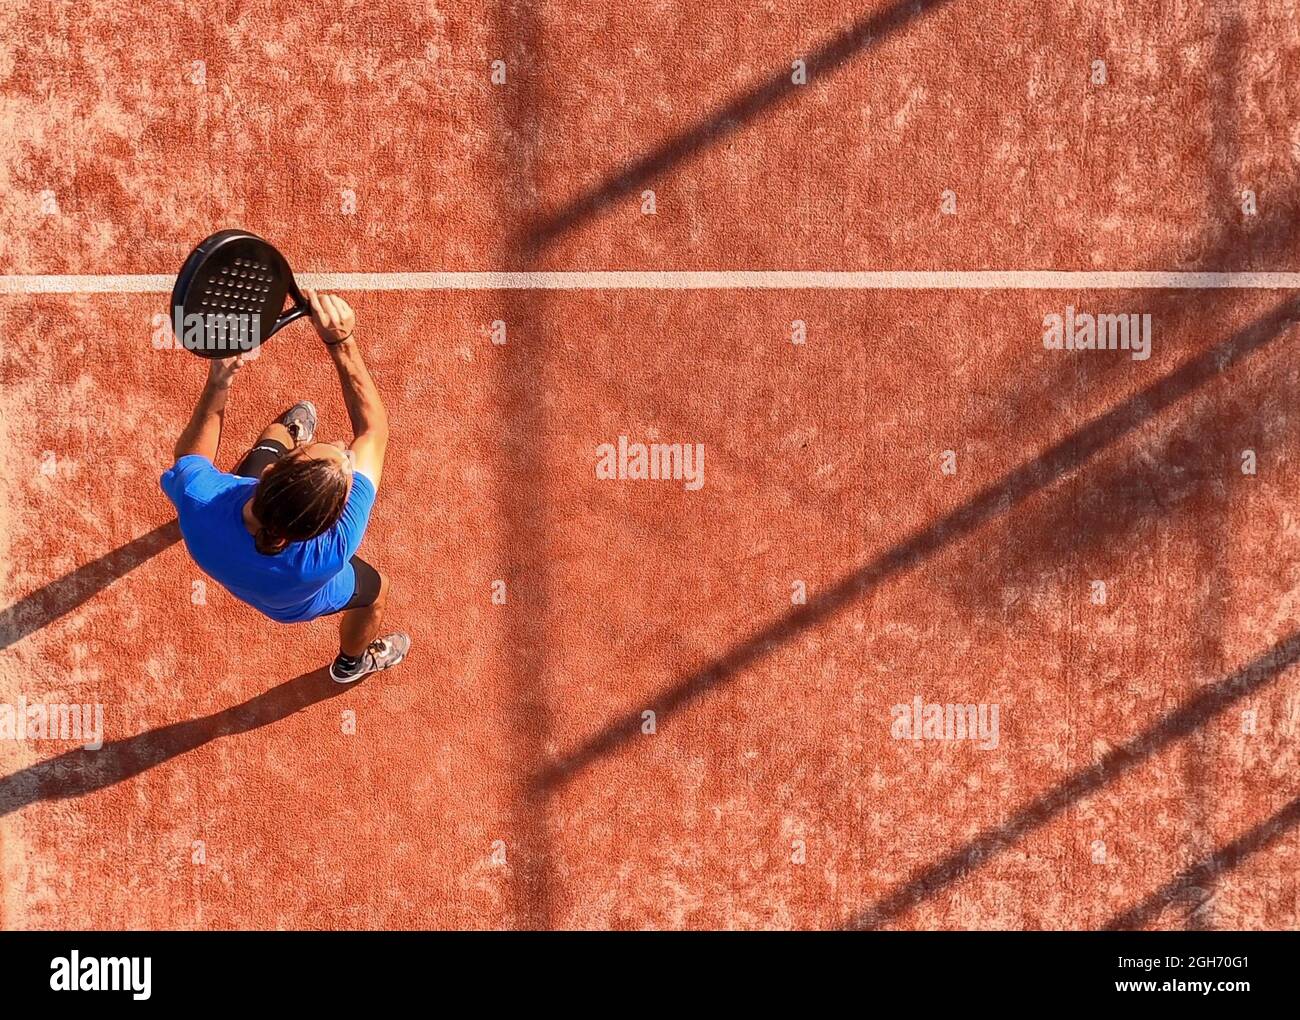 Vista dall'alto di un giocatore professionista di paddle tennis che ha appena colpito la palla con la racchetta. Partita di padel su un campo all'aperto. Foto Stock